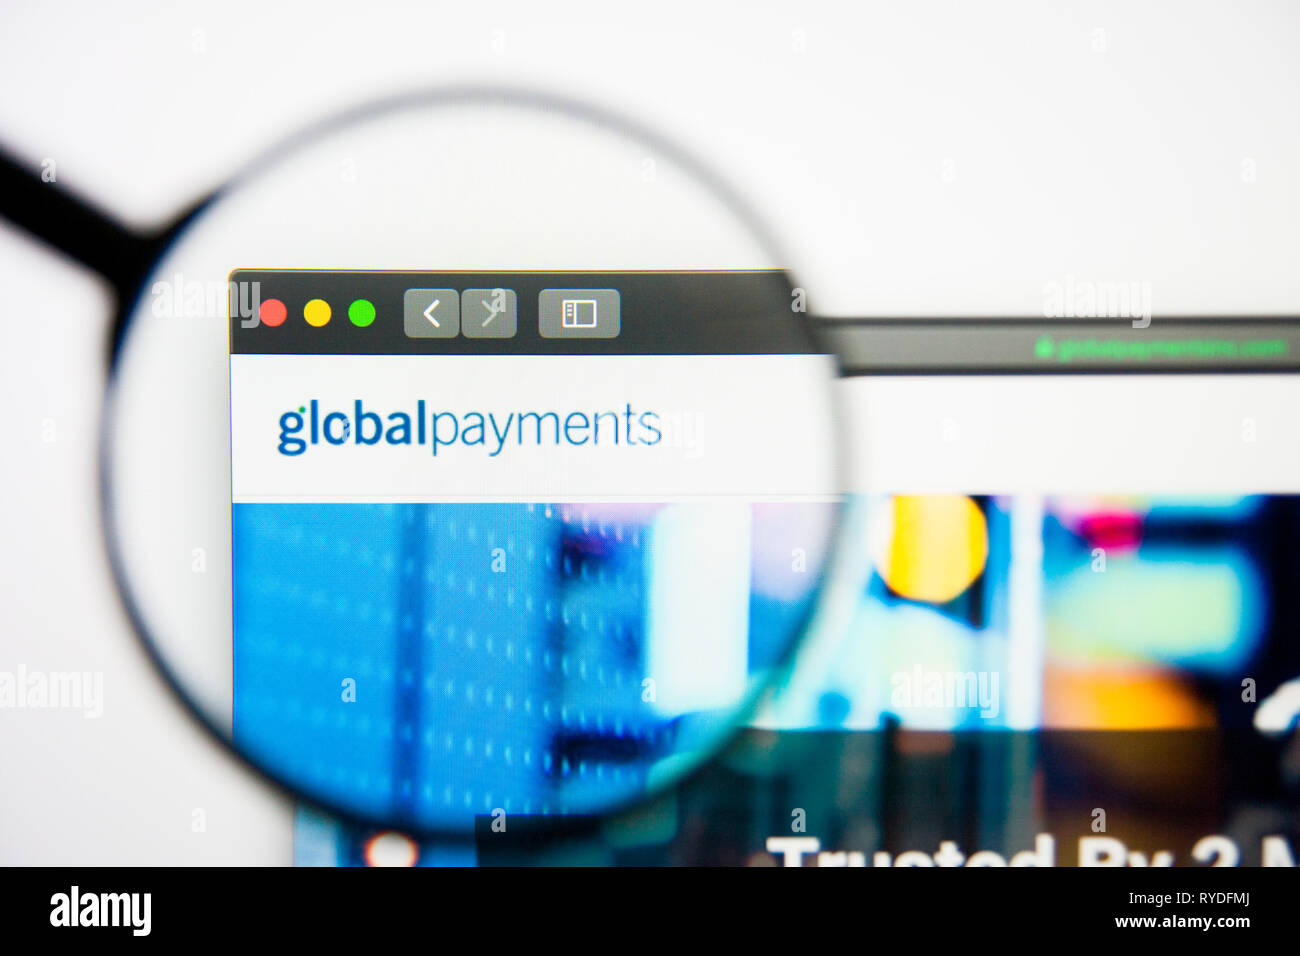 Los Angeles, Californie, USA - 28 Février 2019 : Global Payments accueil du site. Logo de Global Payments visible sur l'écran d'affichage, d'illustration Banque D'Images